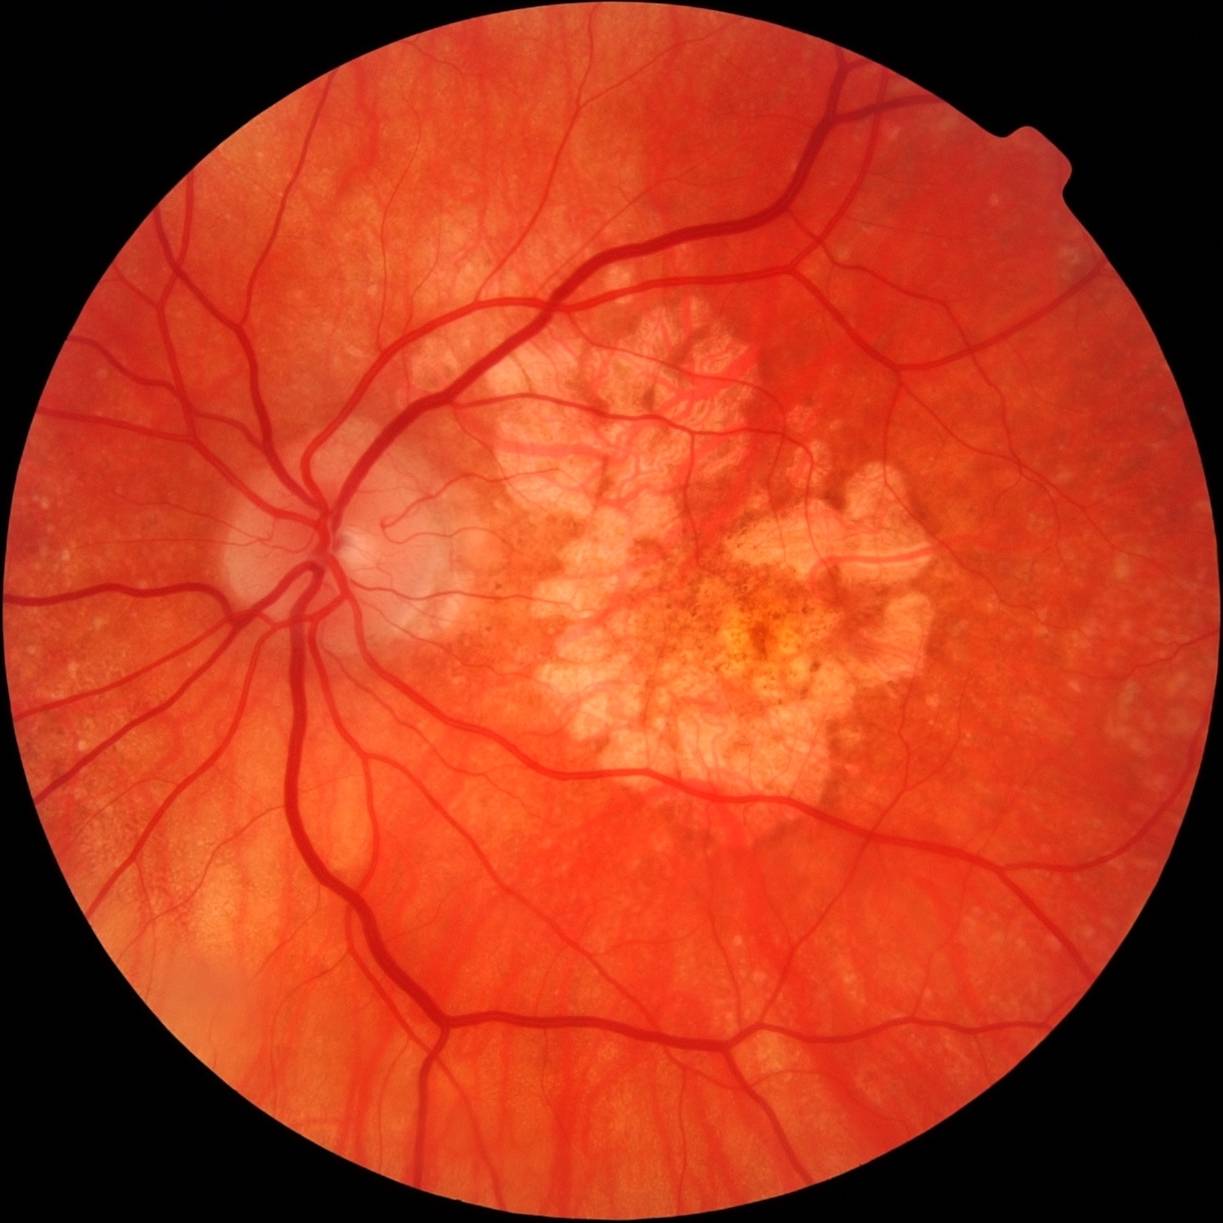 Макулодистрофия сетчатки глаза: лечение народными средствами в домашних условиях, влажная, возрастная, макулярная, прогноз, сухая